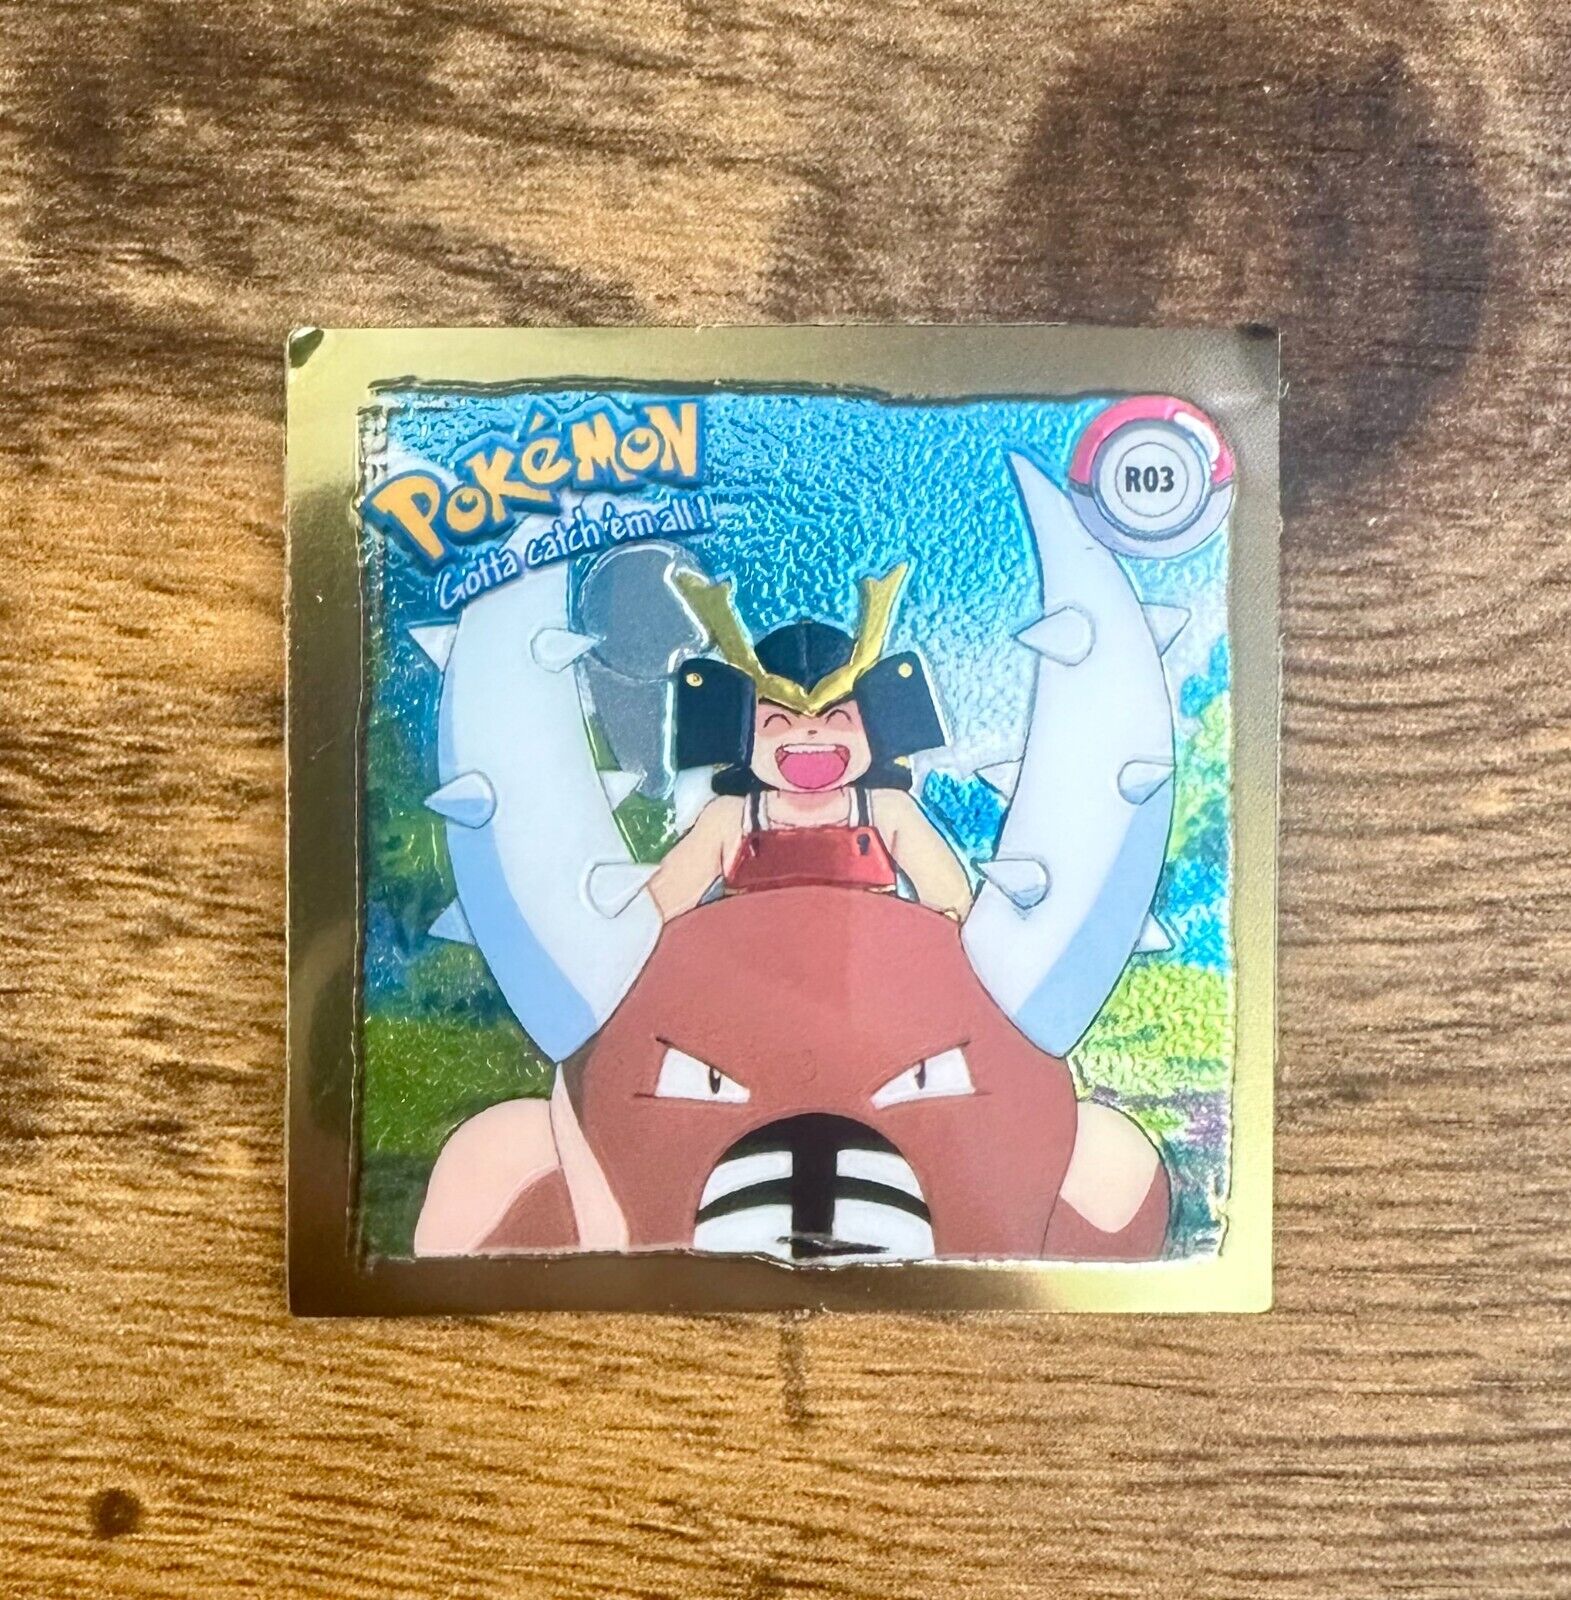 Pinsir #R03 1999 Pokemon Artbox Series 1 Nintendo Sticker Chromium Gold Rare- Mp